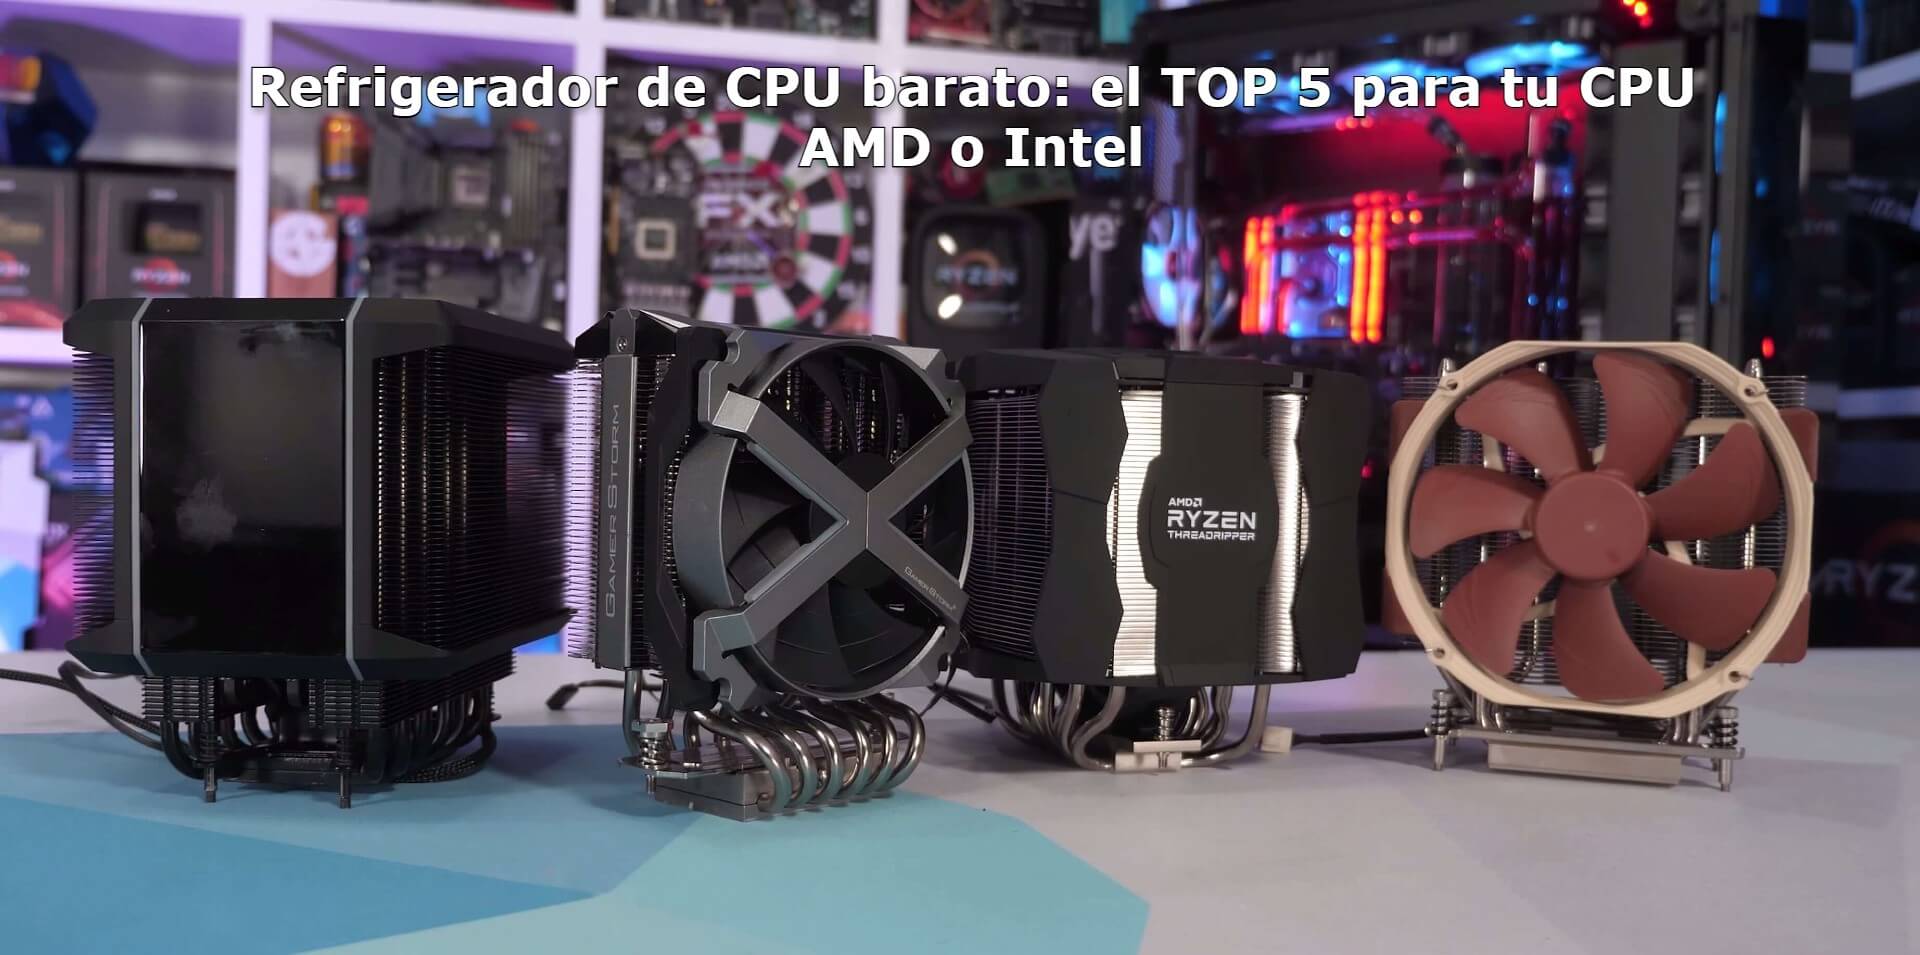 Refrigerador de CPU barato, el TOP 5 para tu CPU AMD o Intel (1)